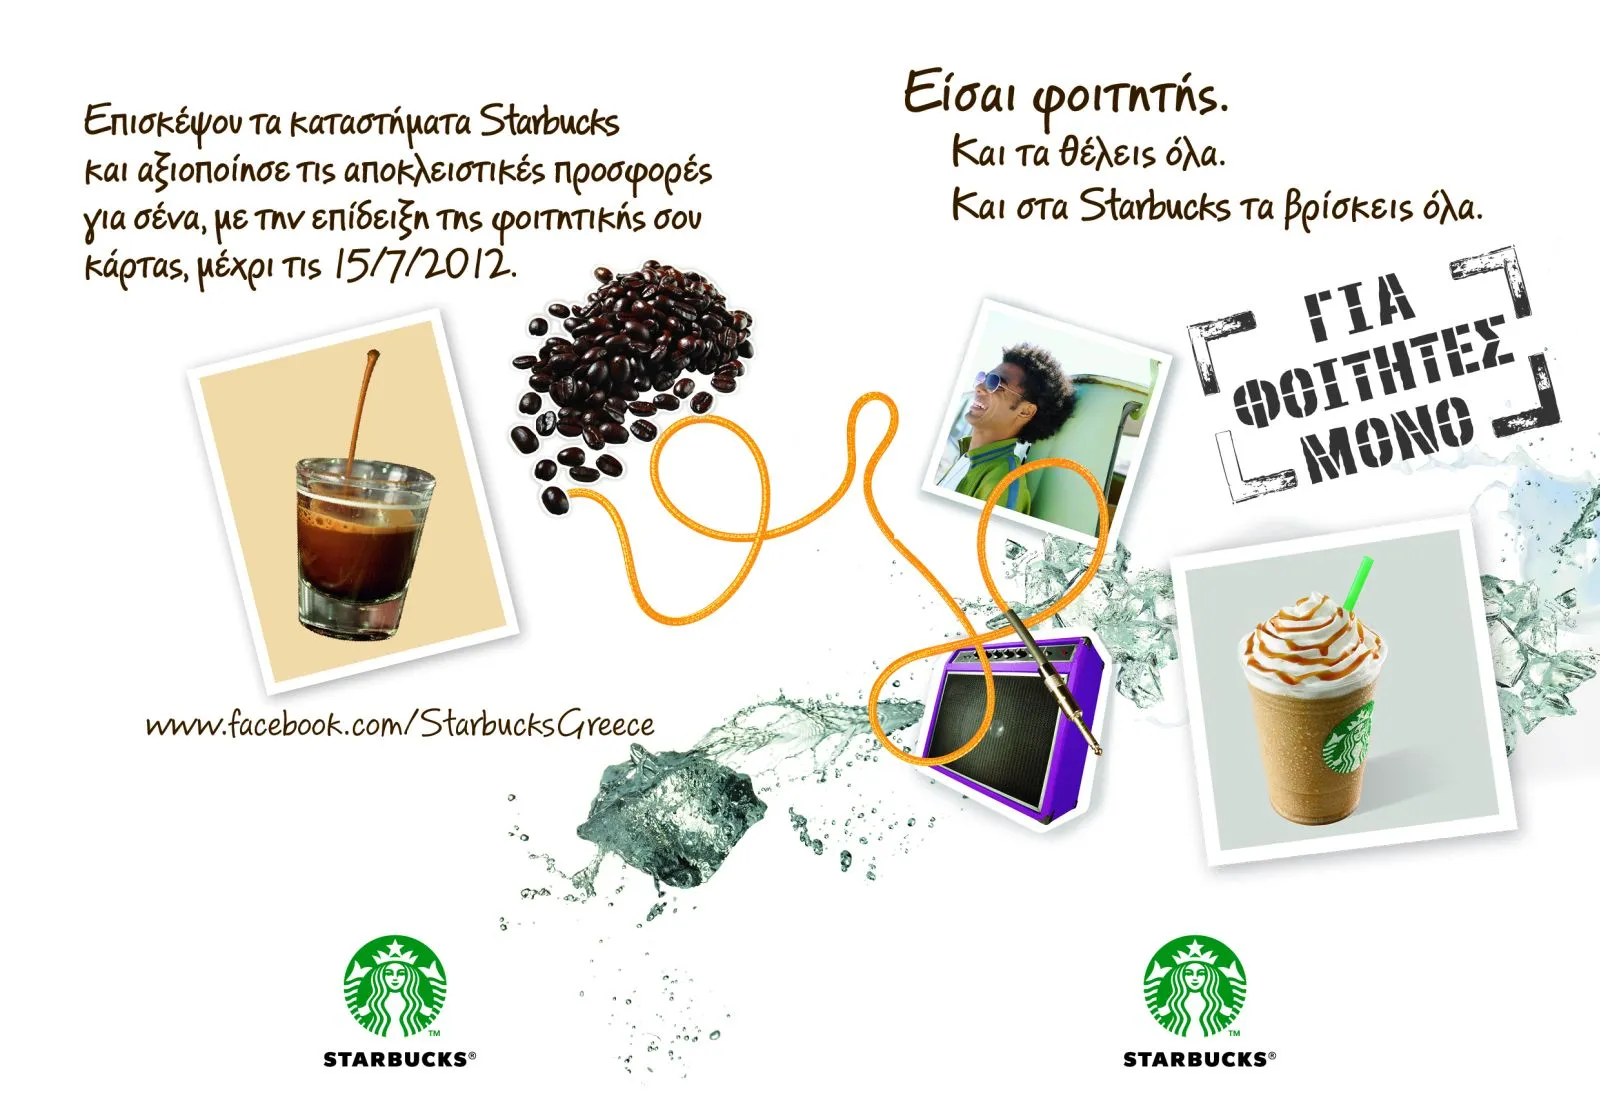 Καλοκαίρι στα Starbucks παρέα με super φοιτητικές προσφορές!